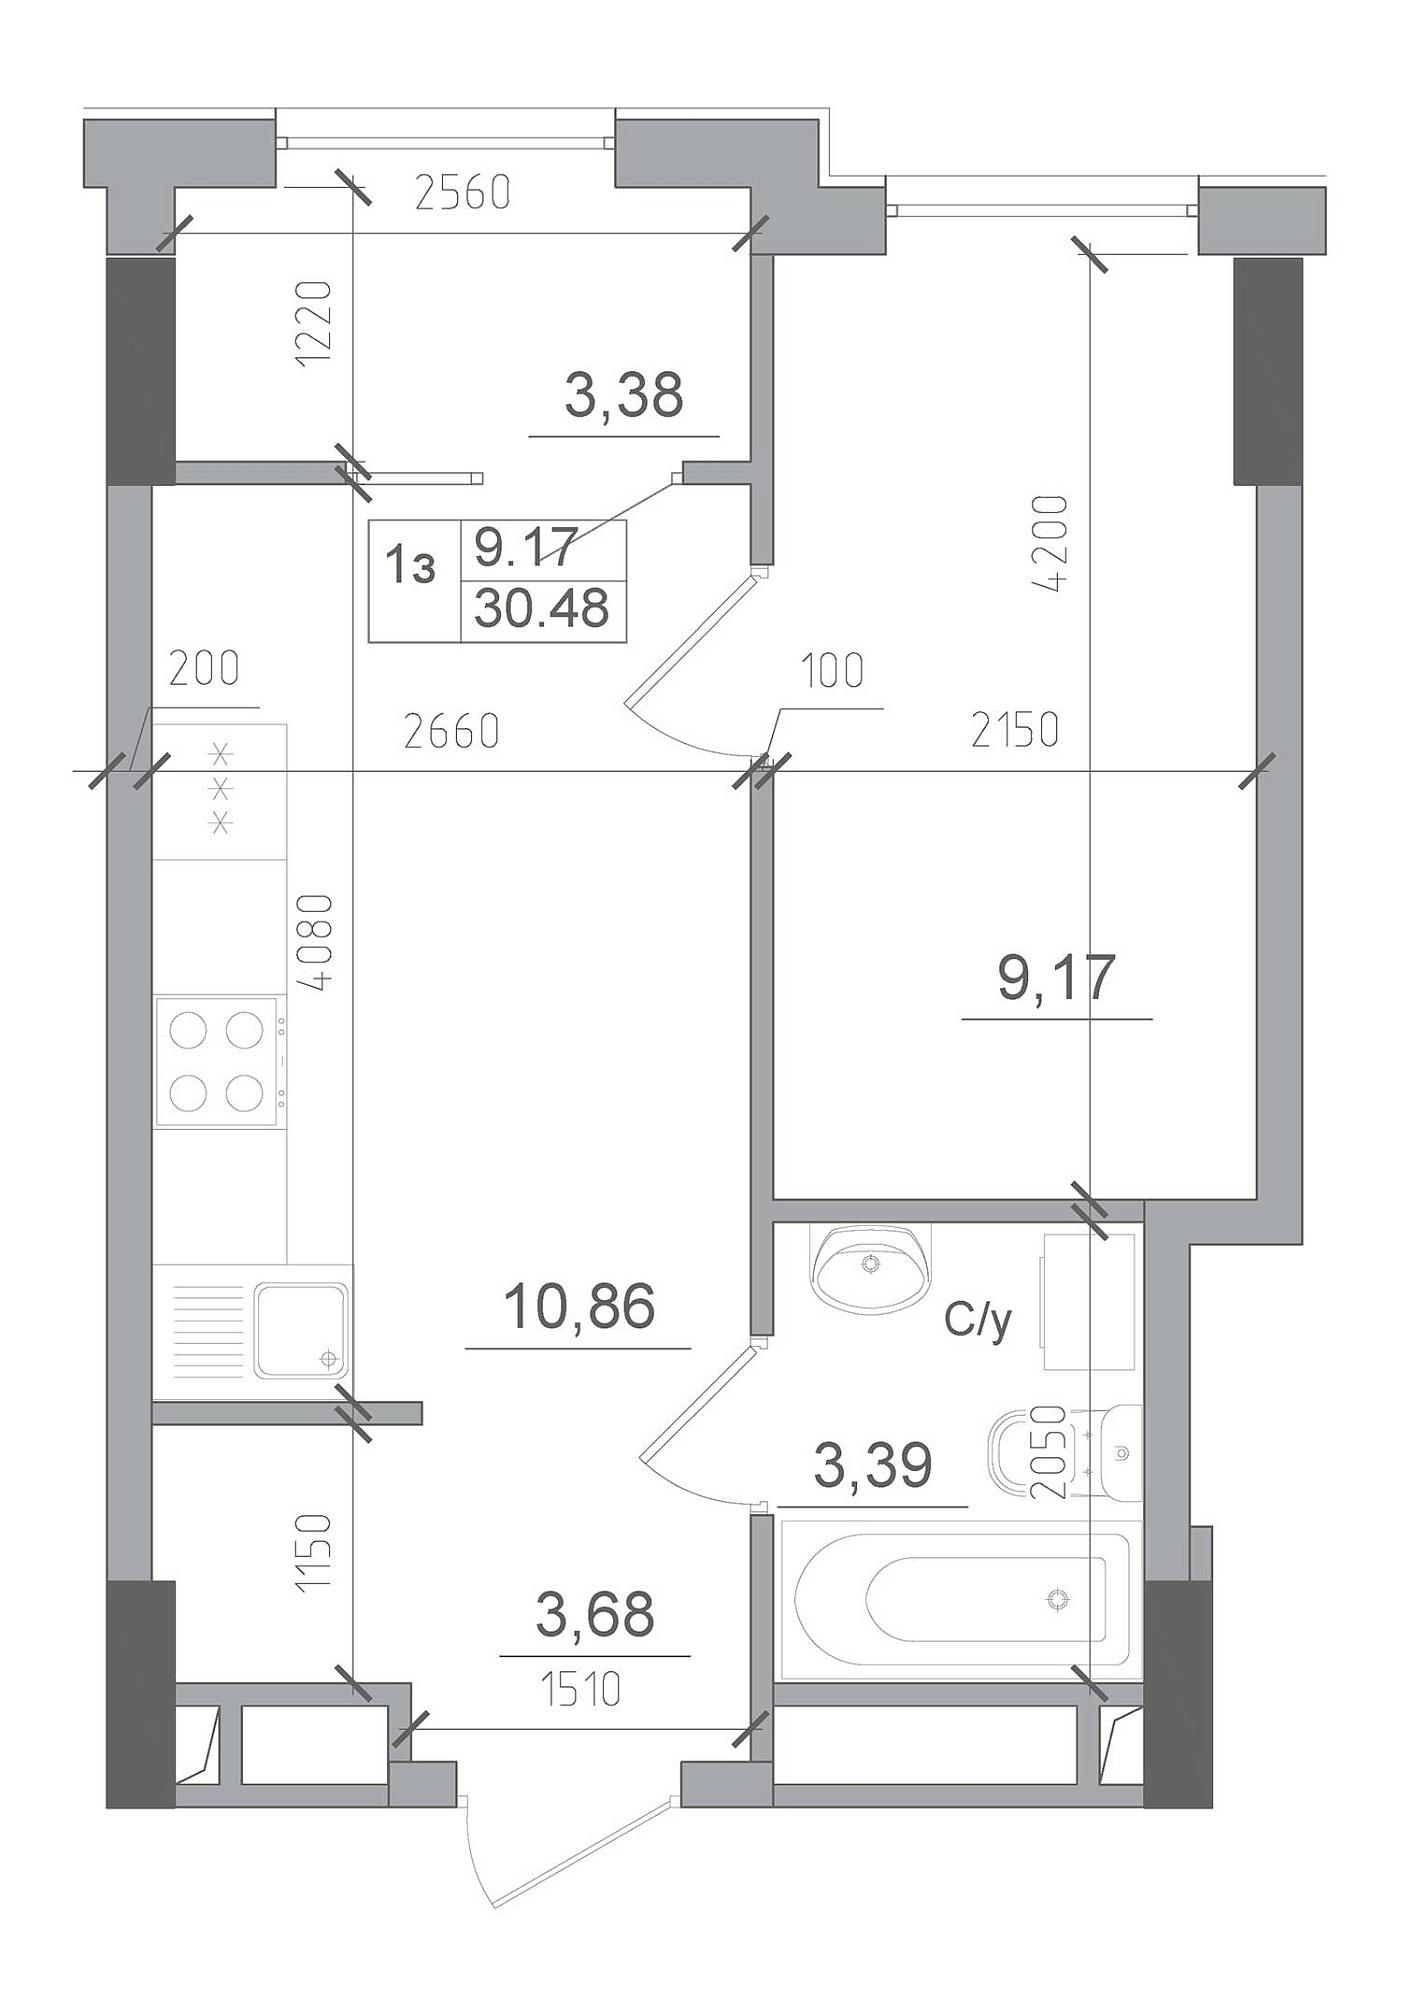 Планировка 1-к квартира площей 30.48м2, AB-22-09/00013.